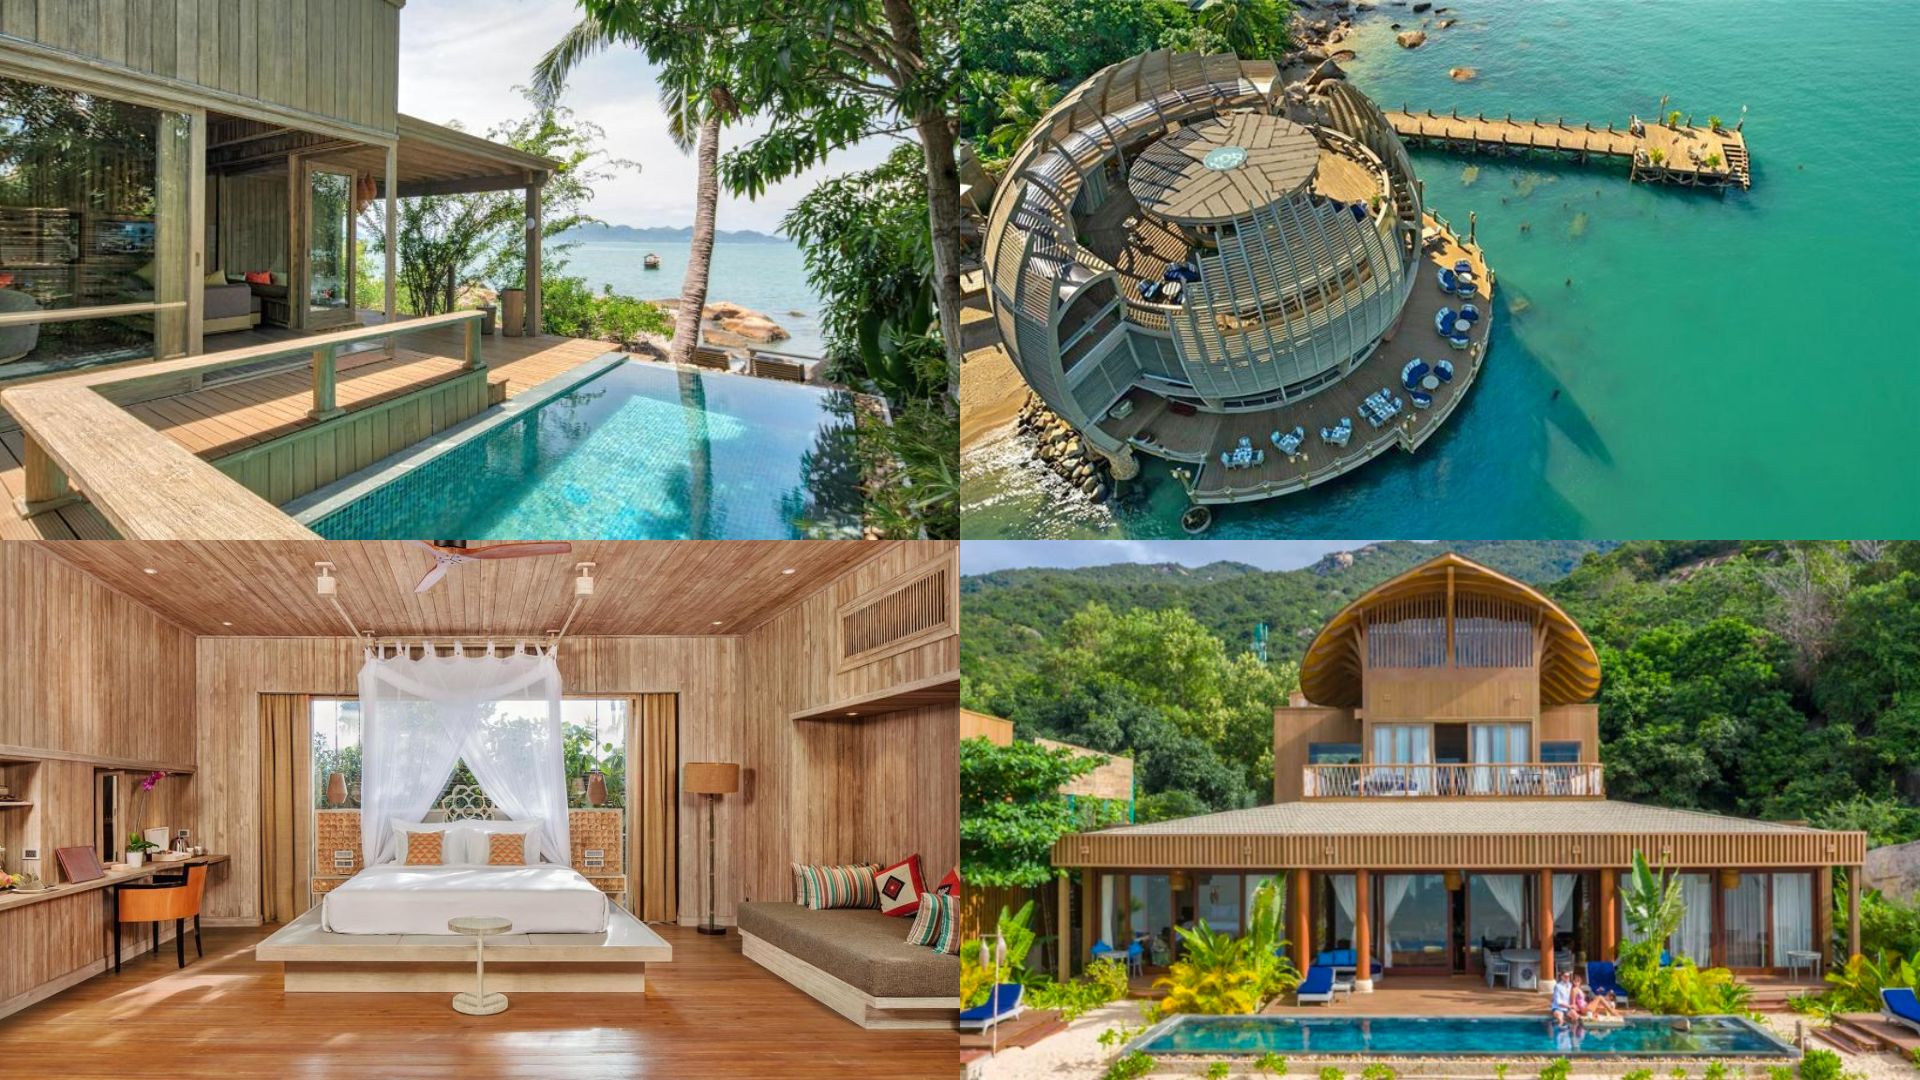 20 Resort Nha Trang view đẹp gần biển dành cho kỳ nghỉ dưỡng